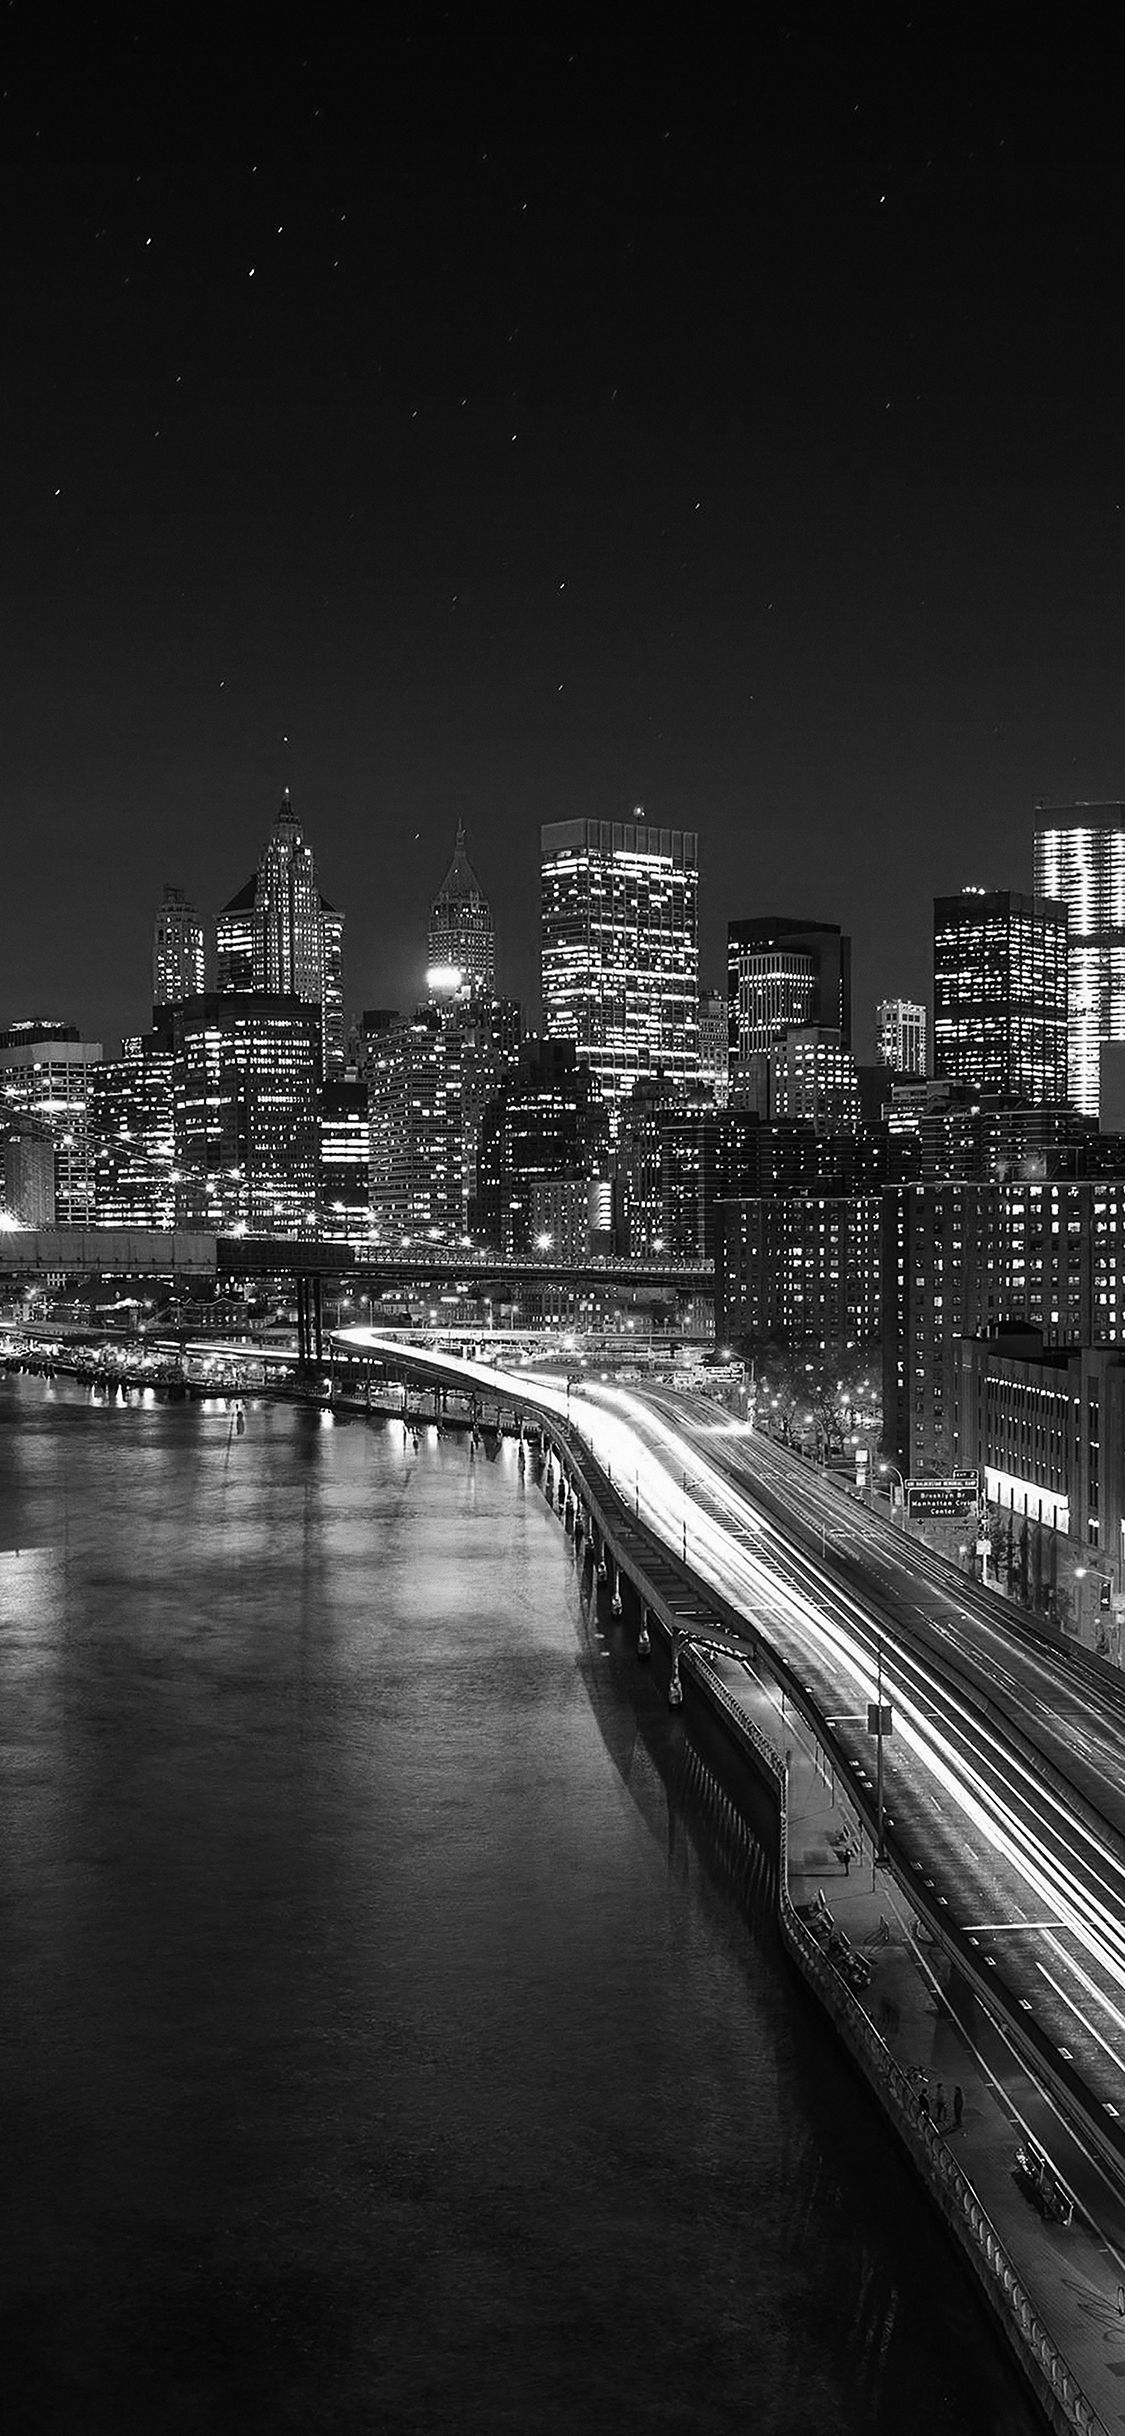 Thành phố đêm, hình ảnh đen trắng: Những hình ảnh đen trắng của thành phố đêm sẽ khiến bạn liên tưởng đến những giấc mơ lãng mạn đầy cảm xúc. Hãy đắm mình vào những hình ảnh về thành phố đêm yên tĩnh và đầy lãng mạn này, đồng hành cùng những giấc mơ của bạn.